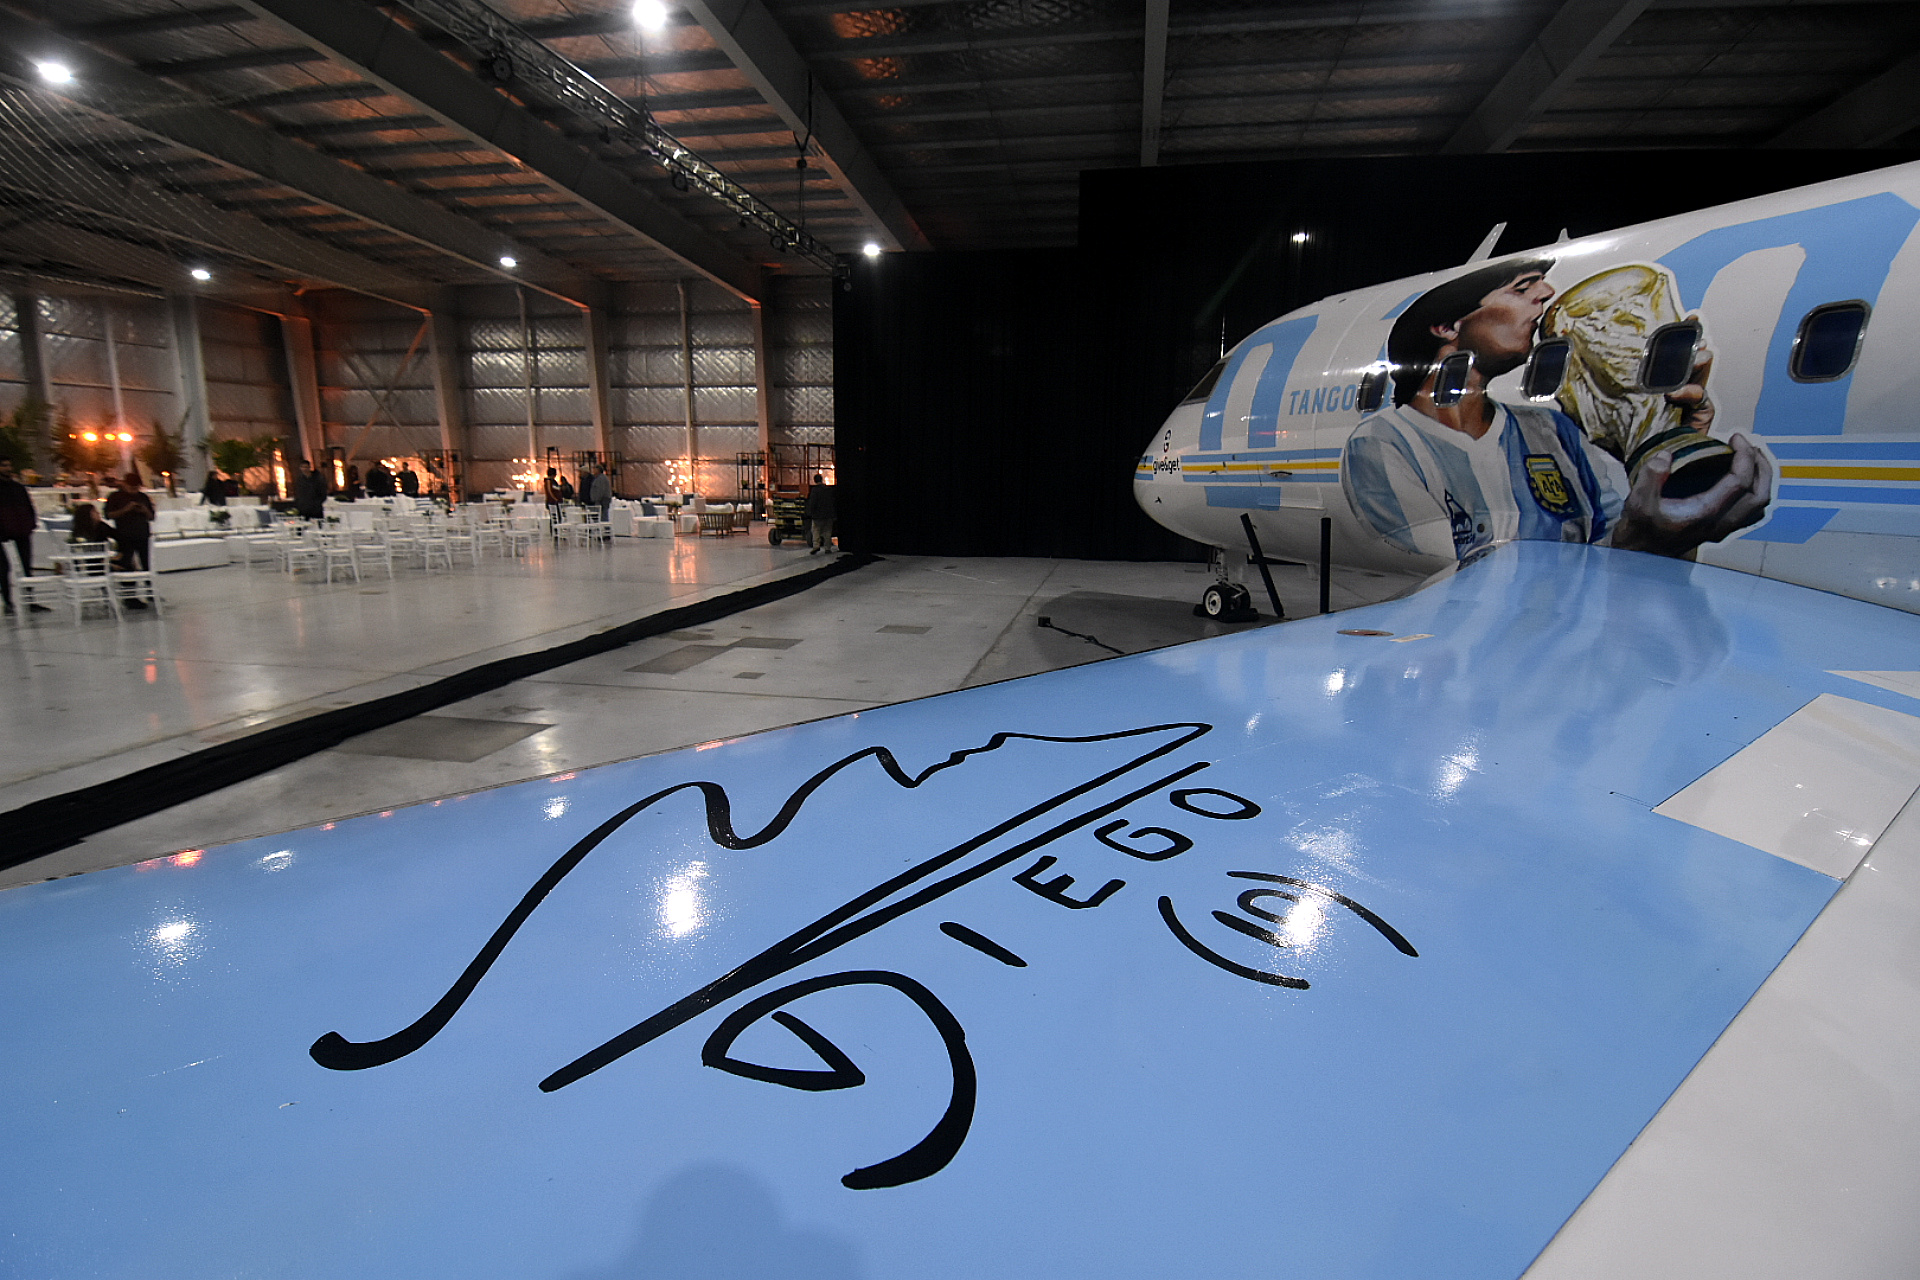 El avión buscará llegar a Qatar 2022 para apoyar a la selección argentina (Nicolás Stulberg)